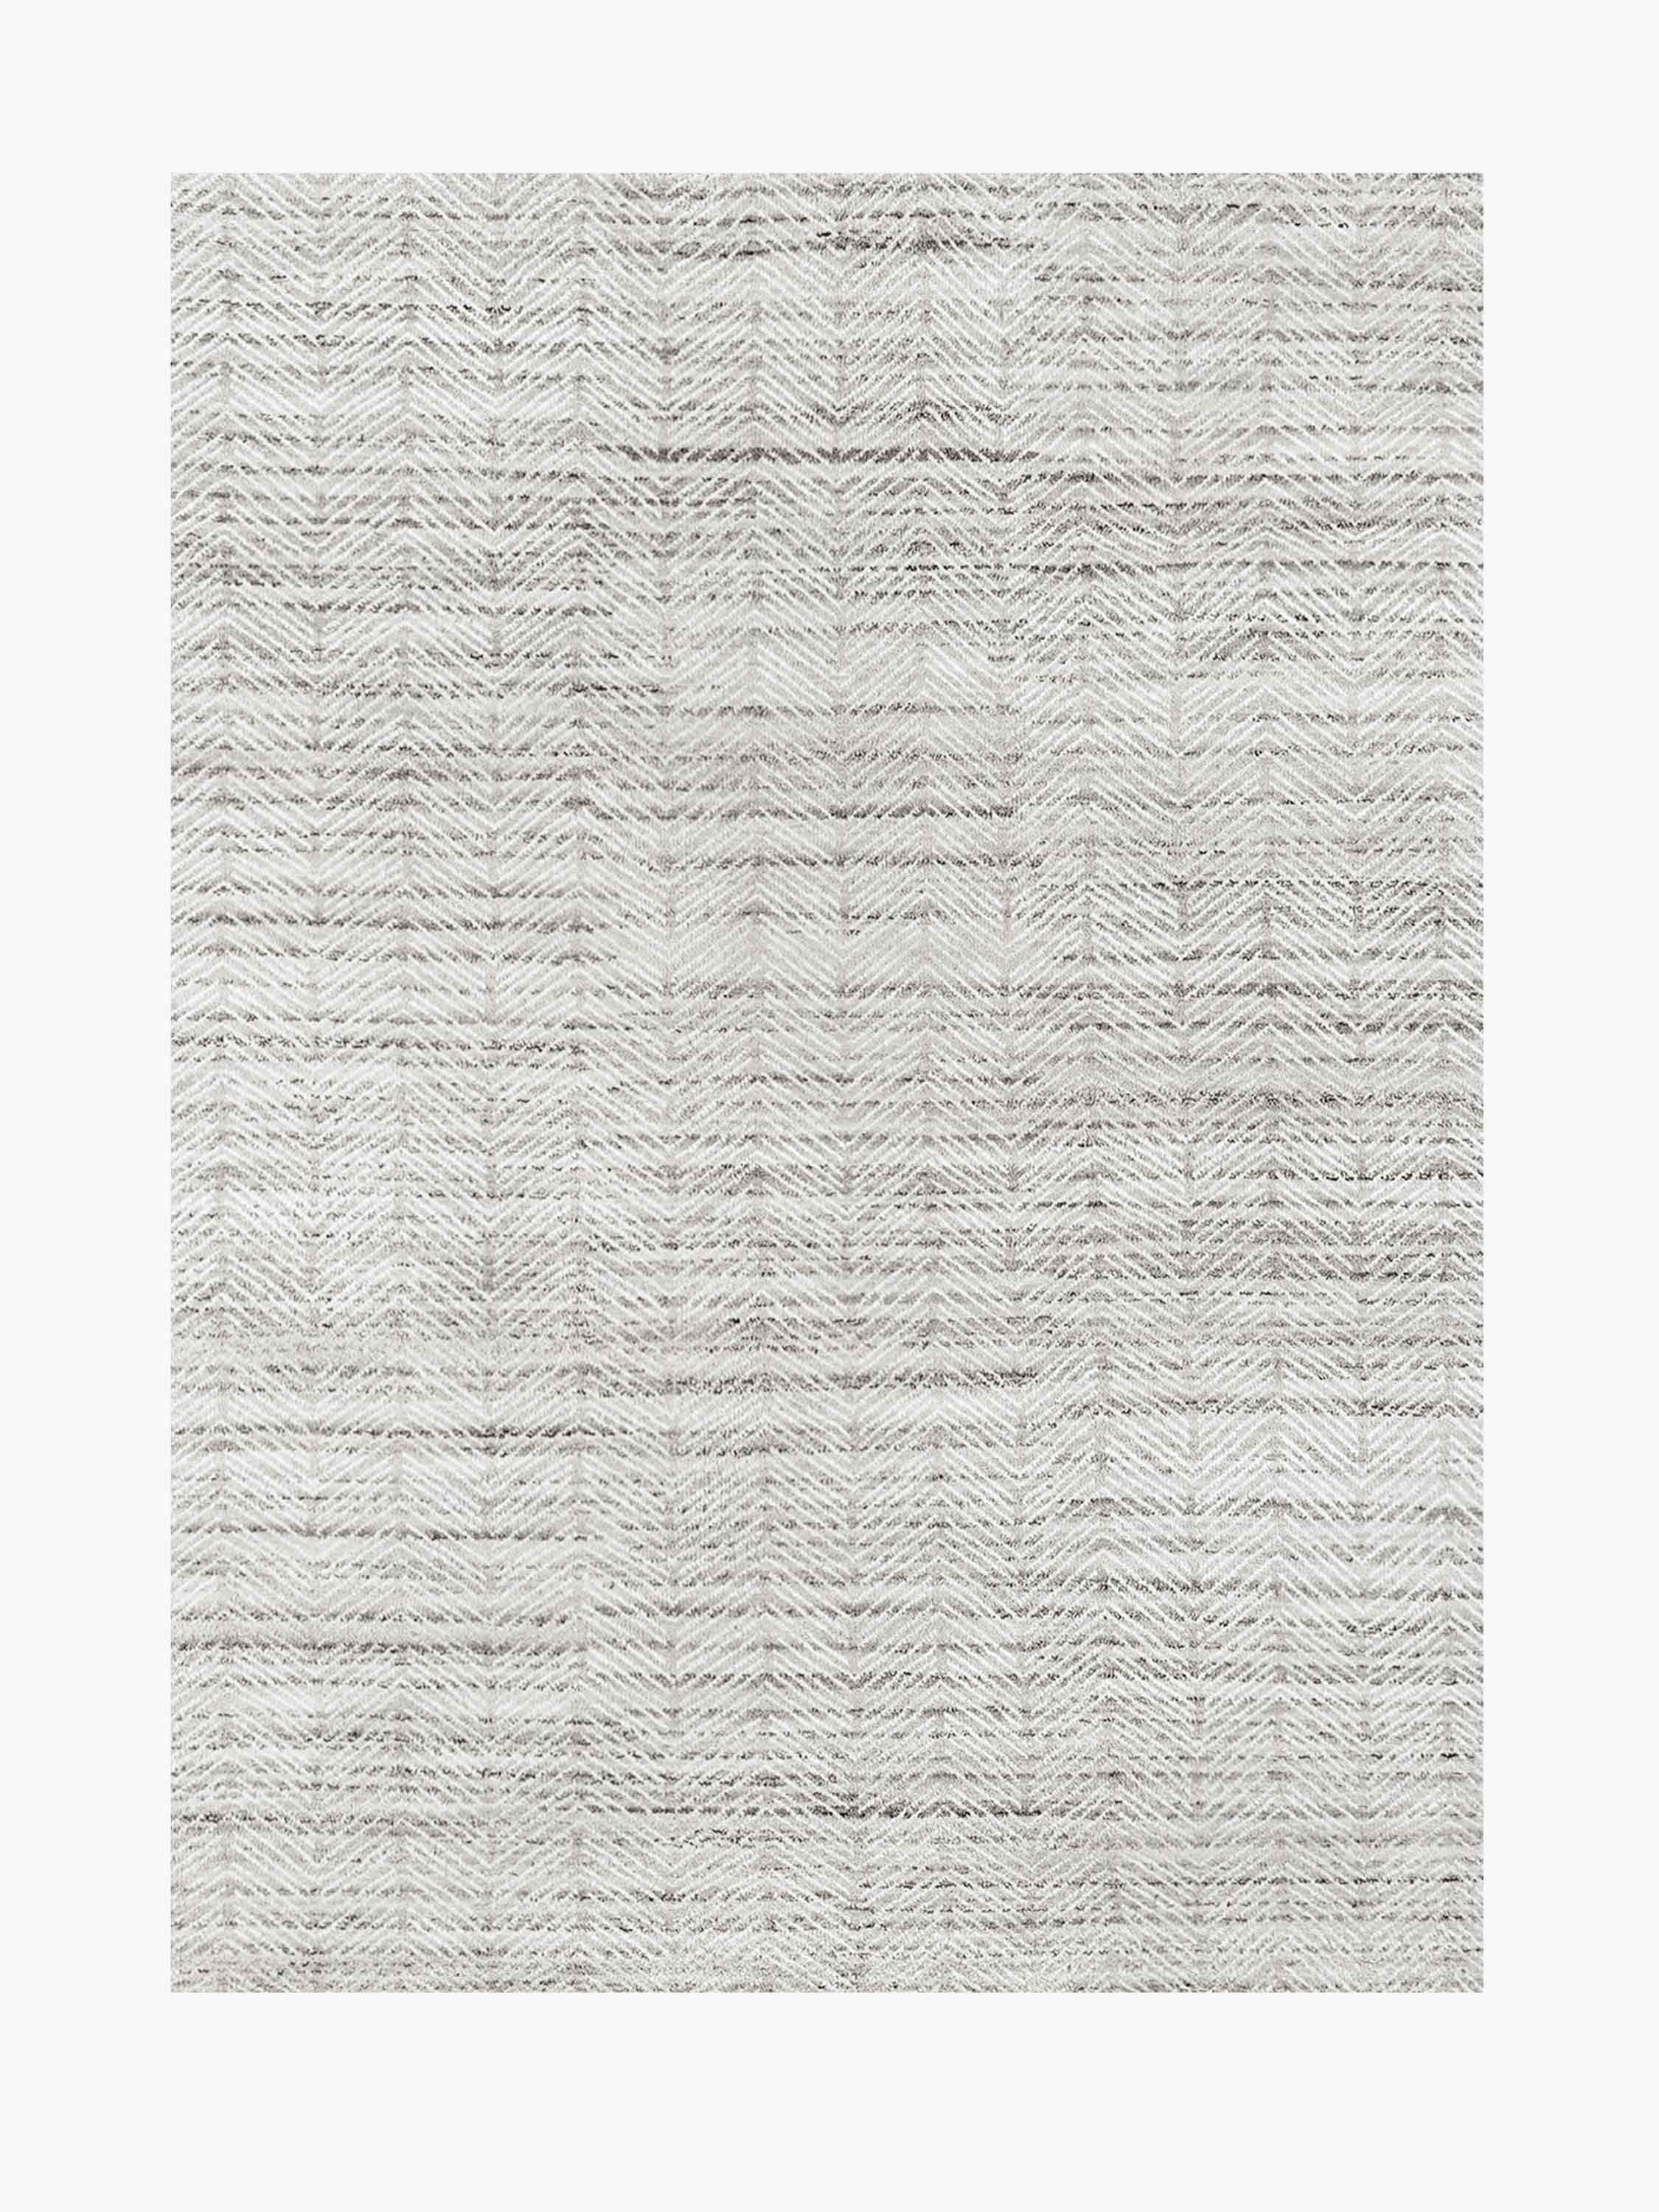 For Sale: Gray (Silver/White) Ben Soleimani Alia Rug– Hand-woven Chevron Wool + Viscose Black/Gray 10'x14'